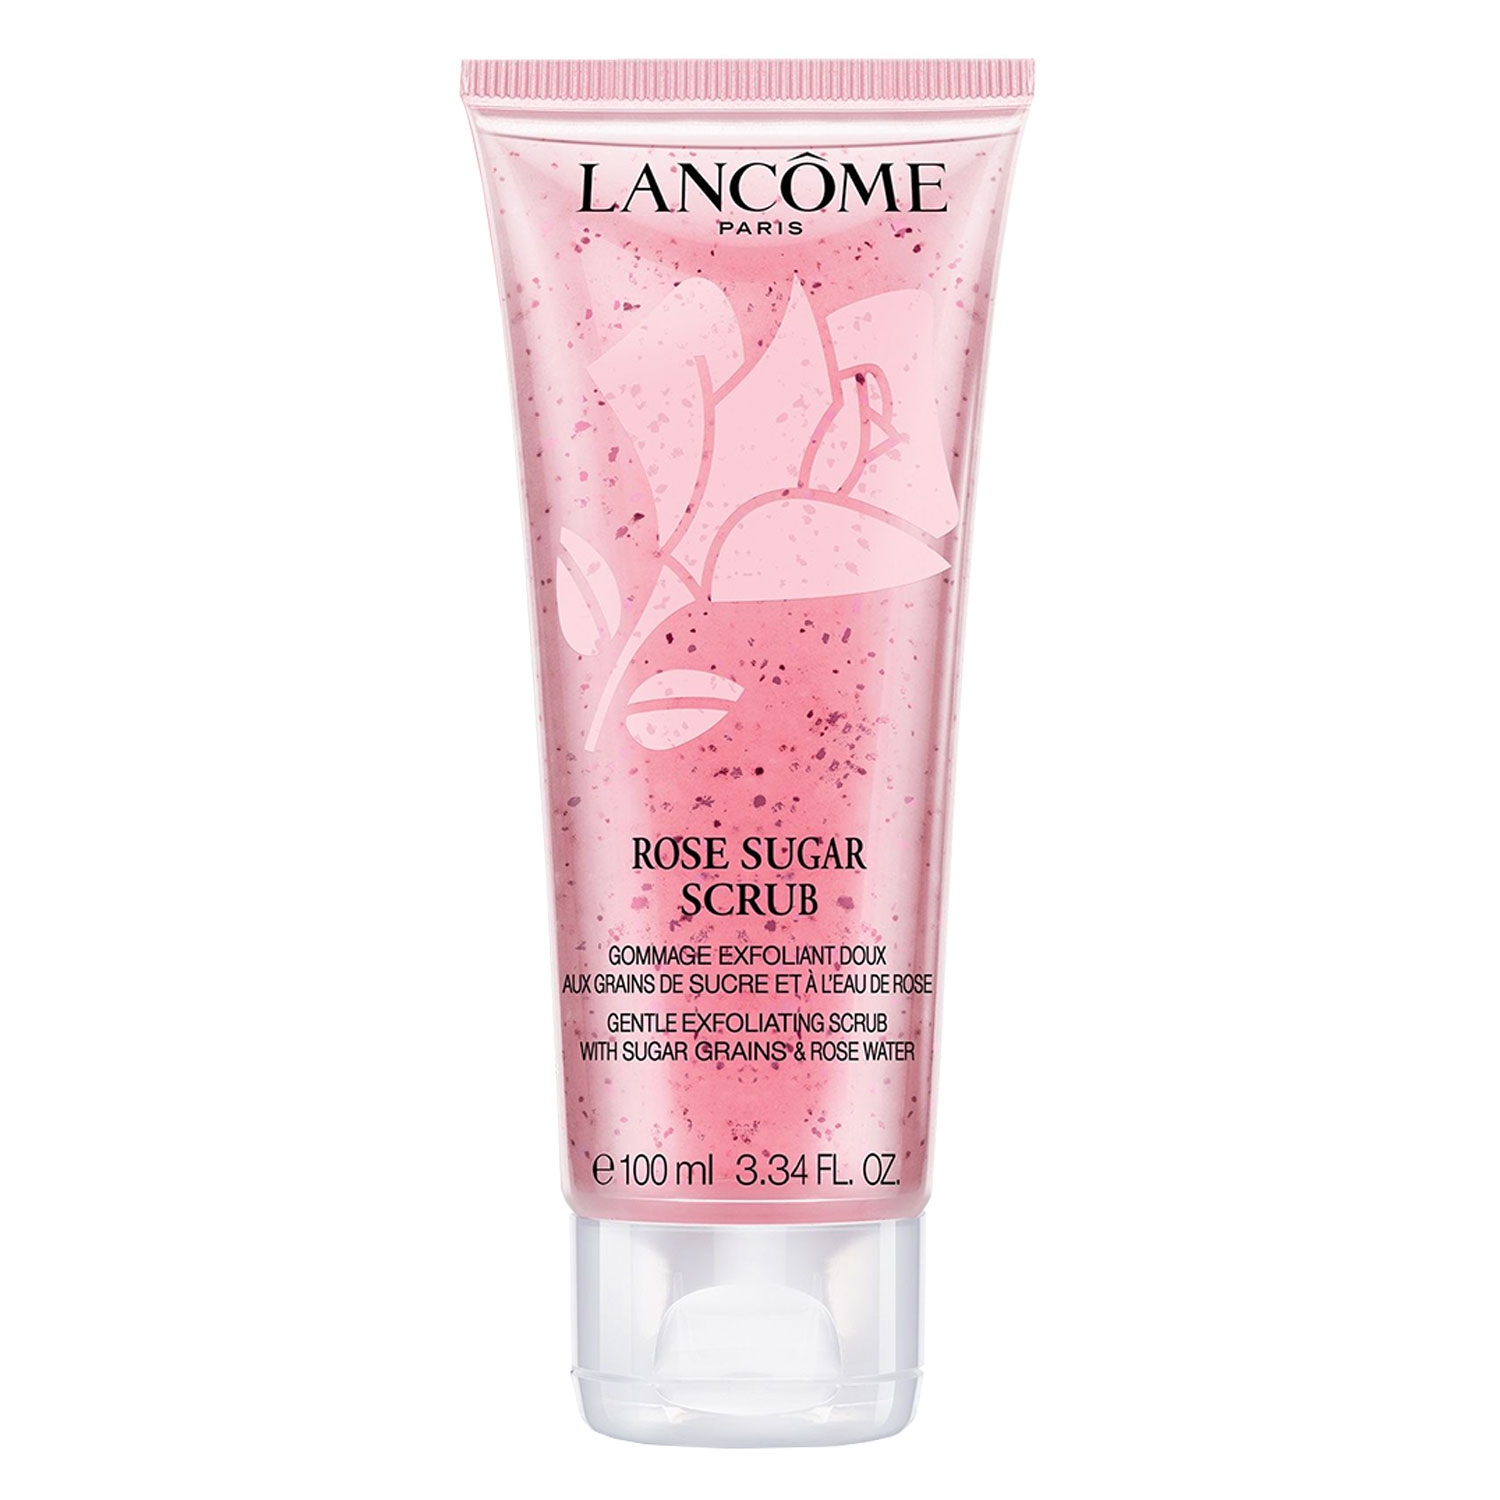 Produktbild von Lancôme Skin - Rose Sugar Scrub